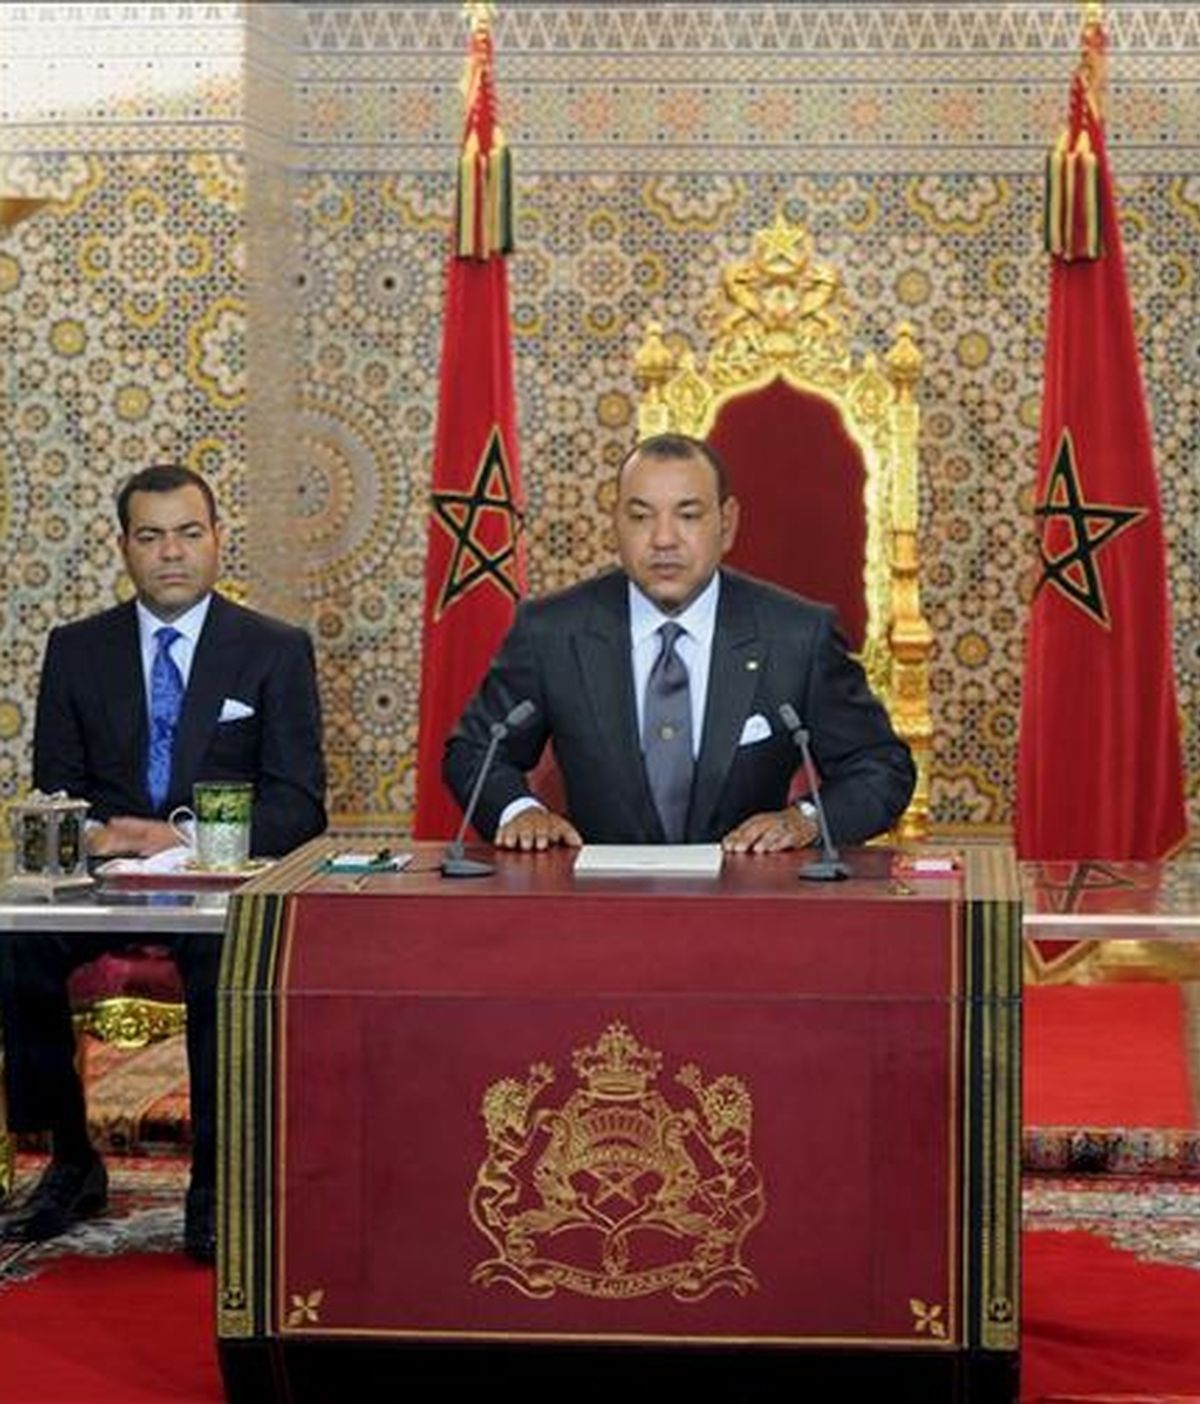 El rey Mohamed VI de Marruecos, durante el discurso que pronunció este viernes con motivo del undécimo aniversario de su coronación. EFE